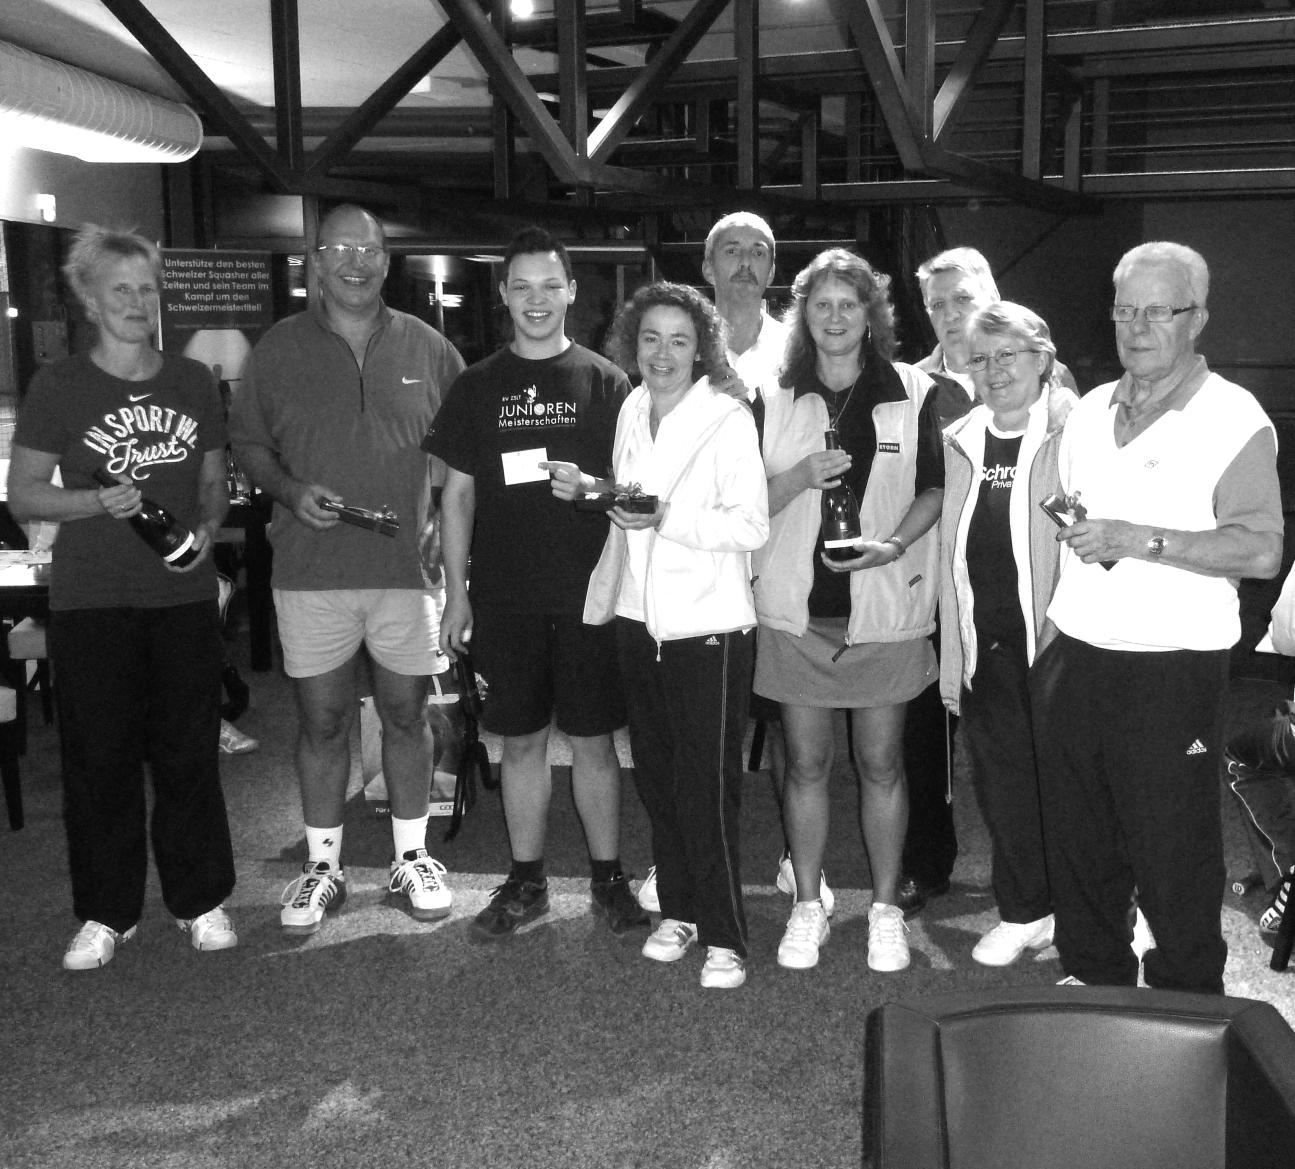 und schliesslich die Super-Truppe GELB; Sieger des Abends Es war ein prima gelungener Abend und Abschluss unseres Tennisjahres 2011, mit so vielen Teilnehmenden, wie schon lange nicht mehr.